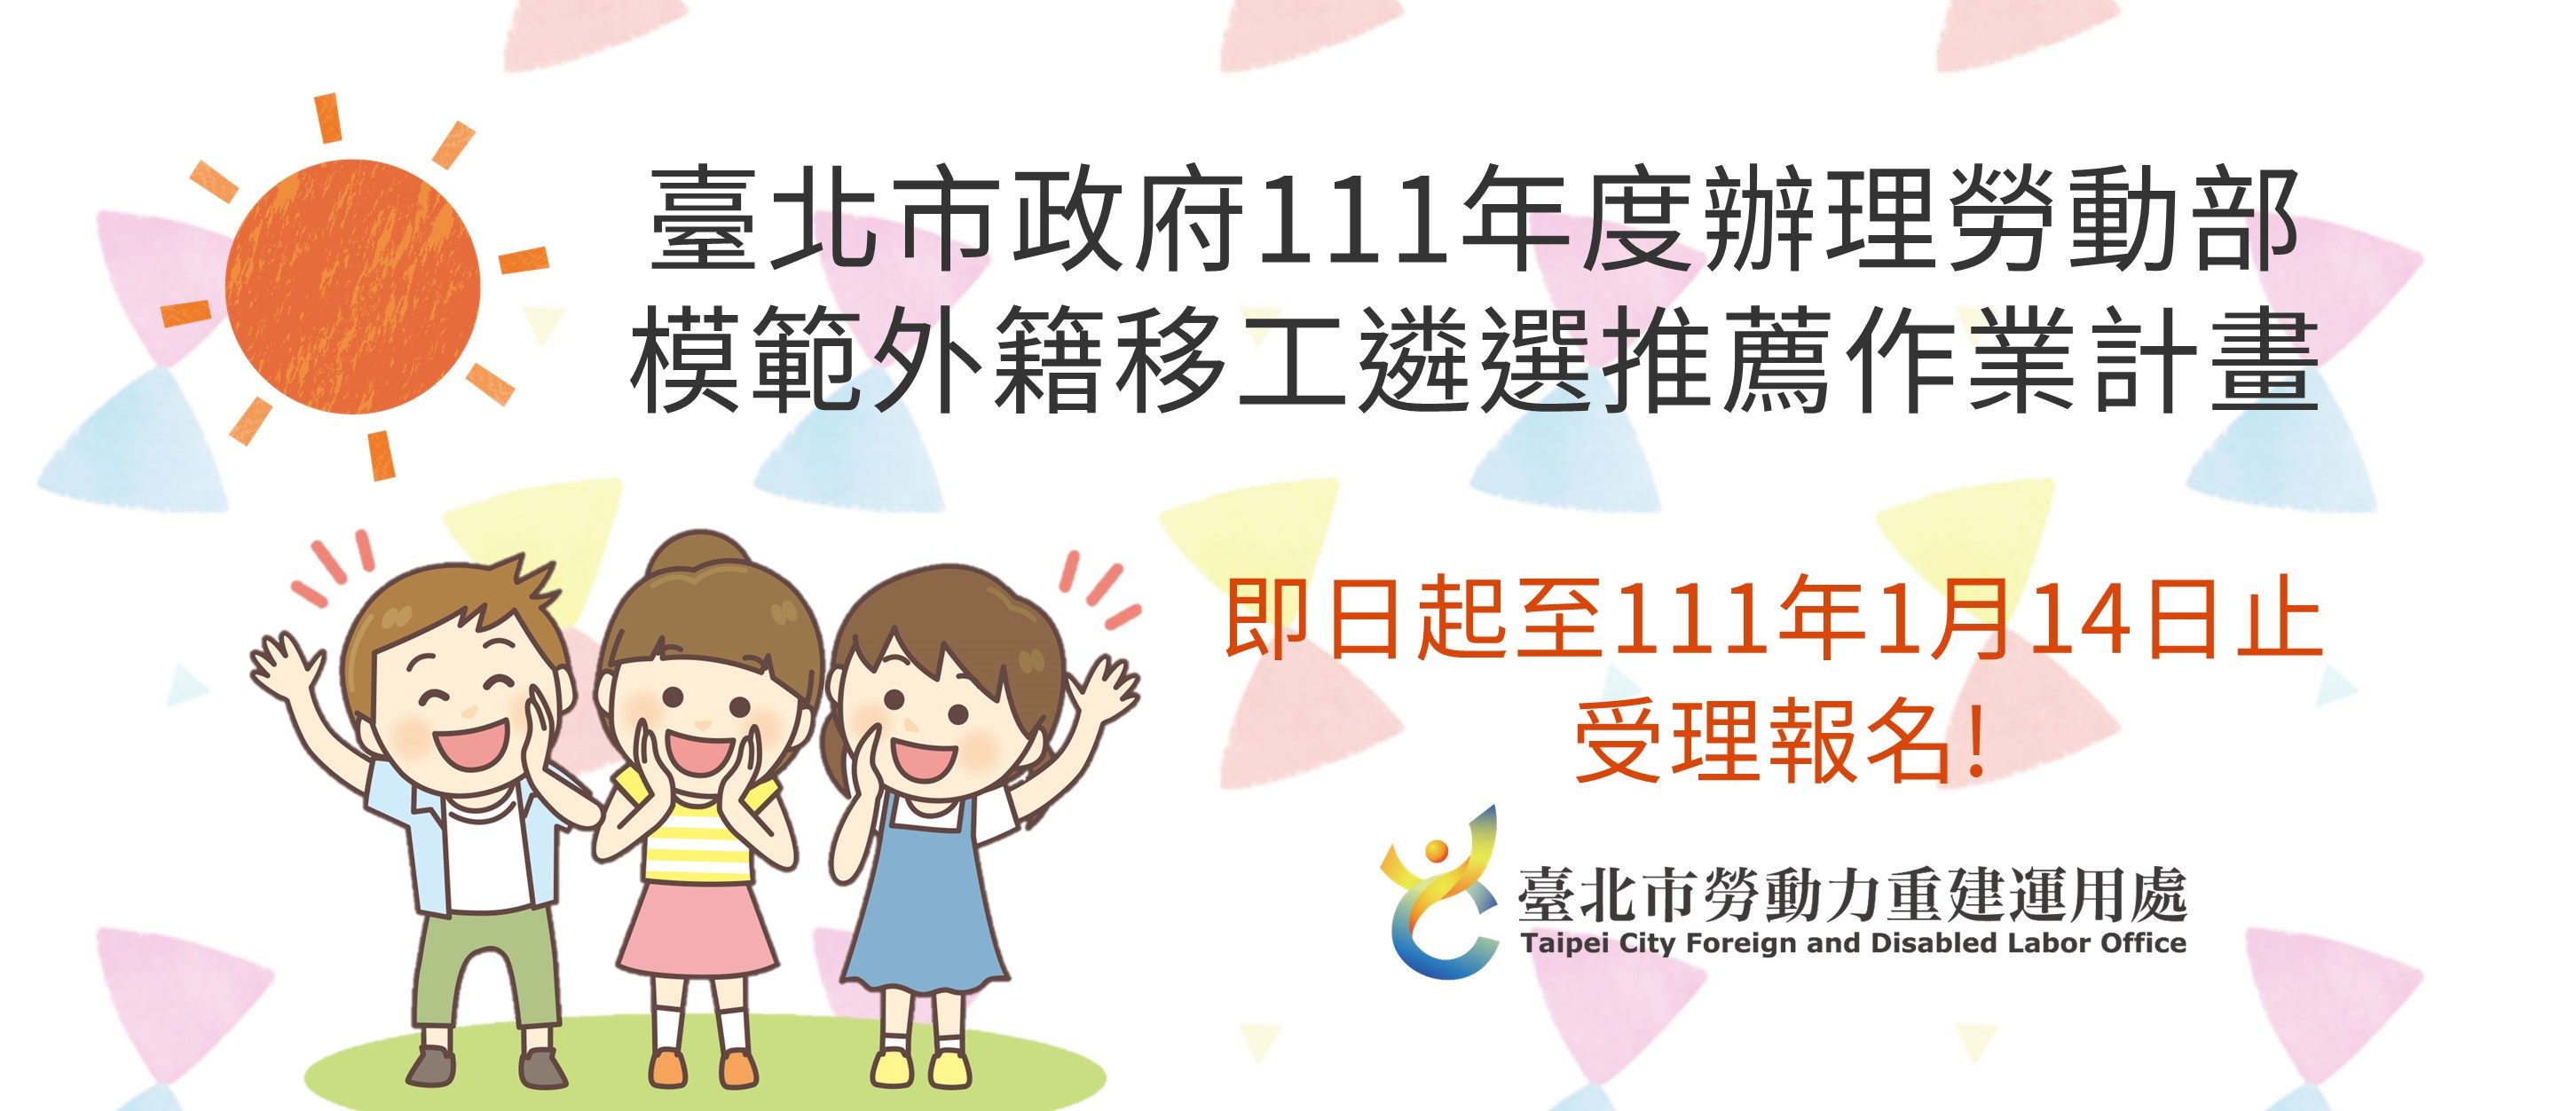 Để cảm ơn những đóng góp của lao động di trú, bắt đầu từ nay cho đến hết ngày 14/1/2022, Cục Lao động thành phố Đài Bắc sẽ tiếp nhận hồ sơ đề cử và bình chọn những người lao động di trú ưu tú. (Nguồn ảnh: chính quyền thành phố Đài Bắc)